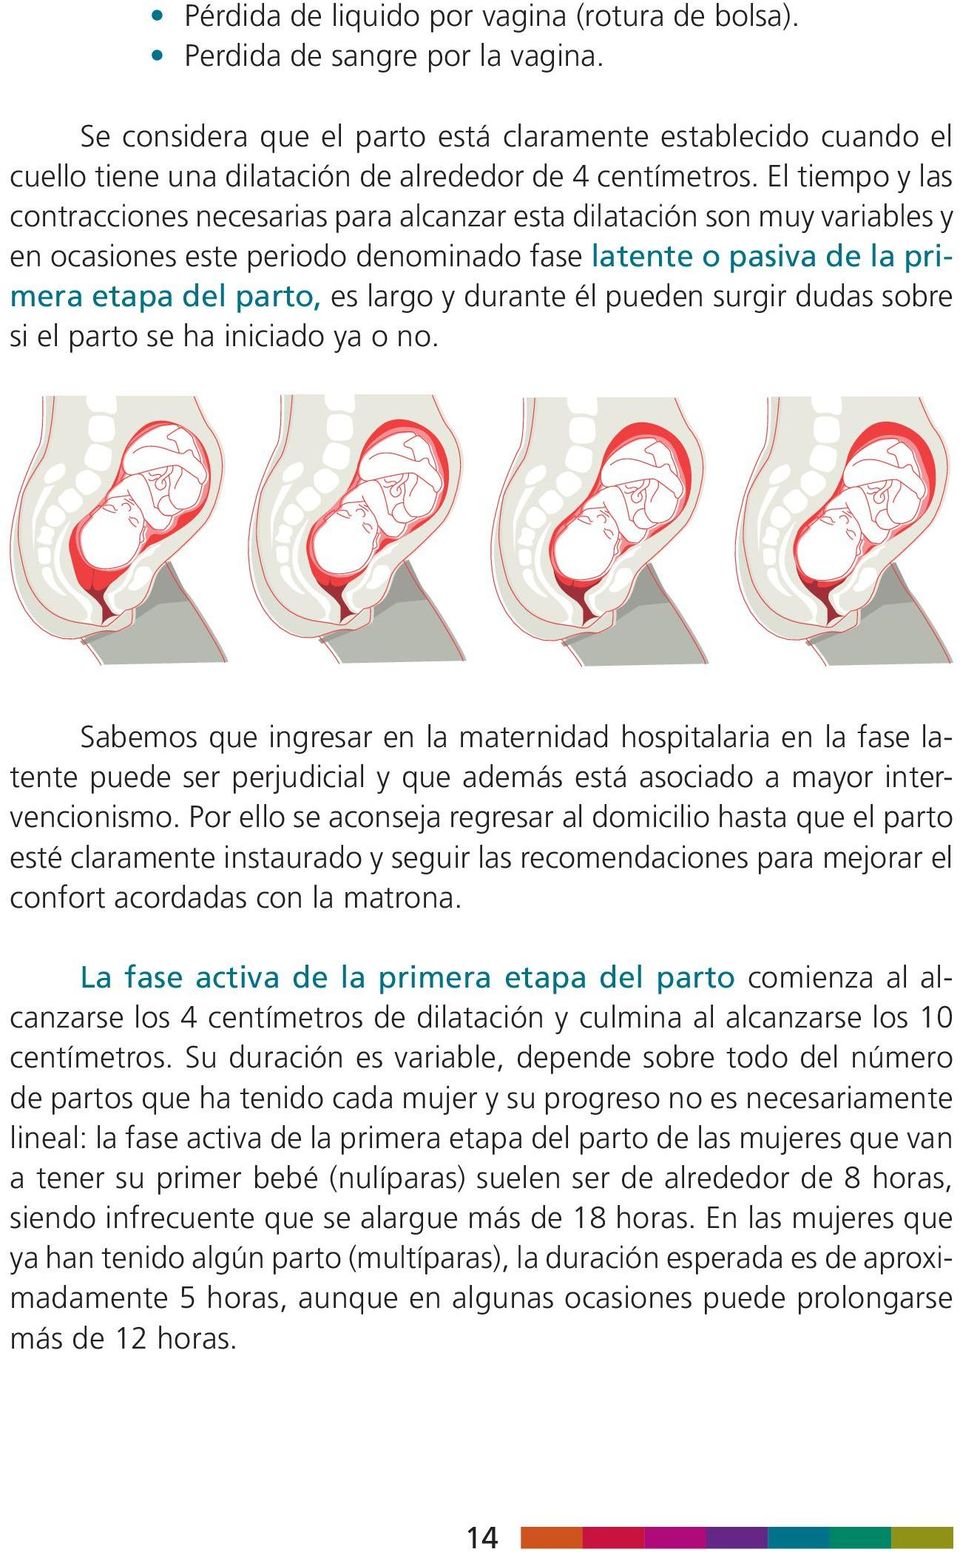 El tiempo y las contracciones necesarias para alcanzar esta dilatación son muy variables y en ocasiones este periodo denominado fase latente o pasiva de la primera etapa del parto, es largo y durante